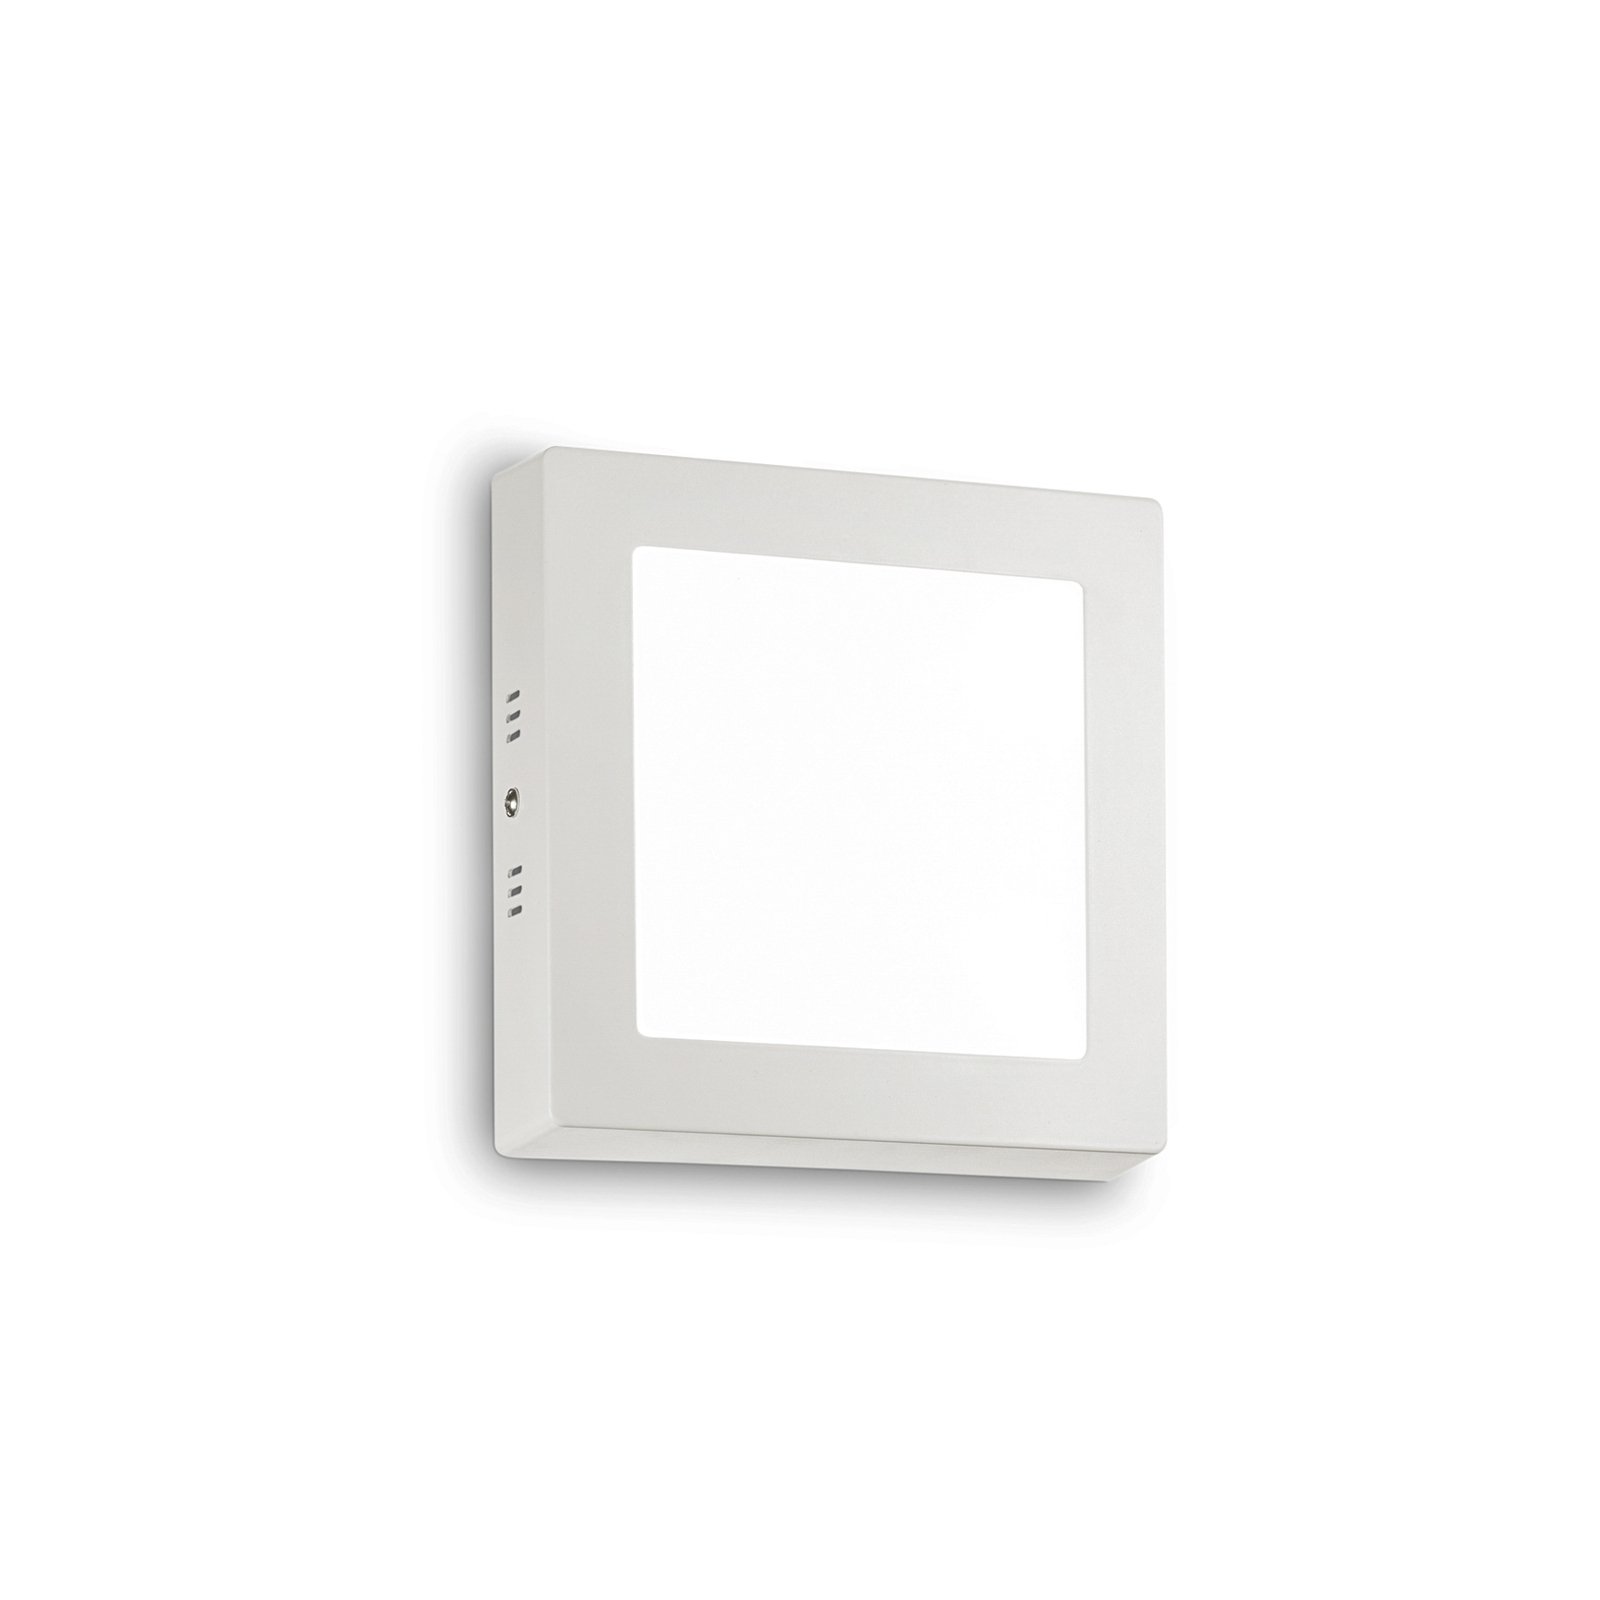 Ideal Lux LED-seinävalaisin Universal, valkoinen, alumiini, 17x17 cm